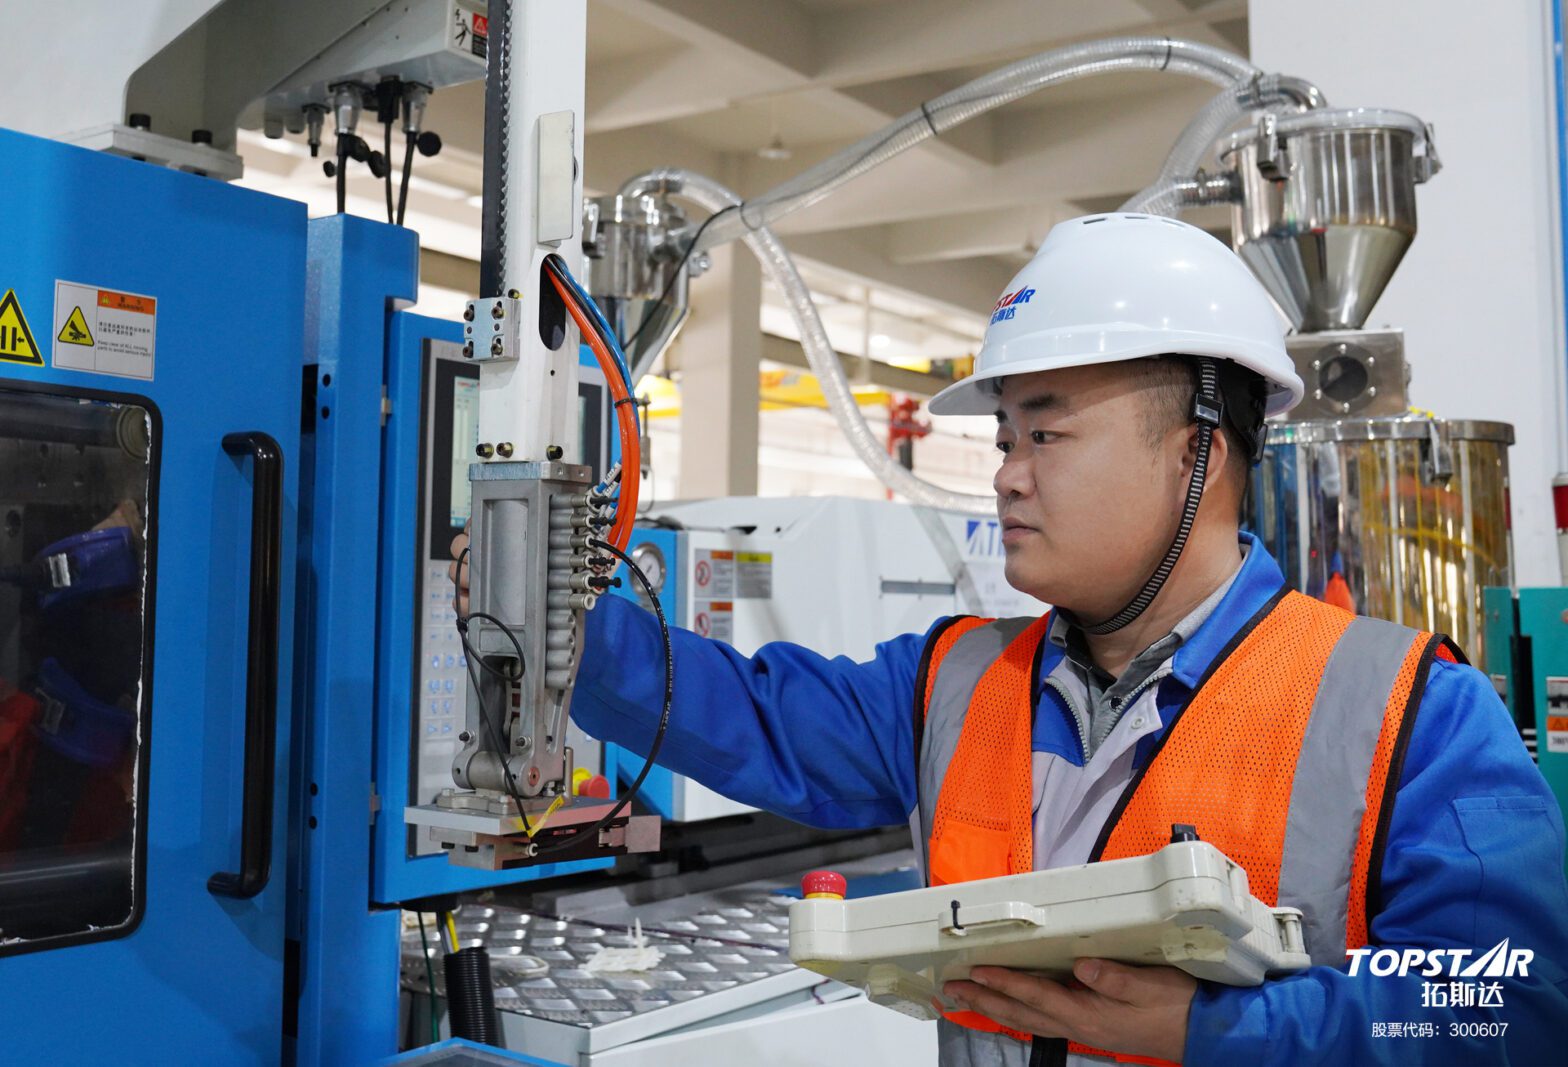 Zhong Jiajun debugs the machinery and equipment